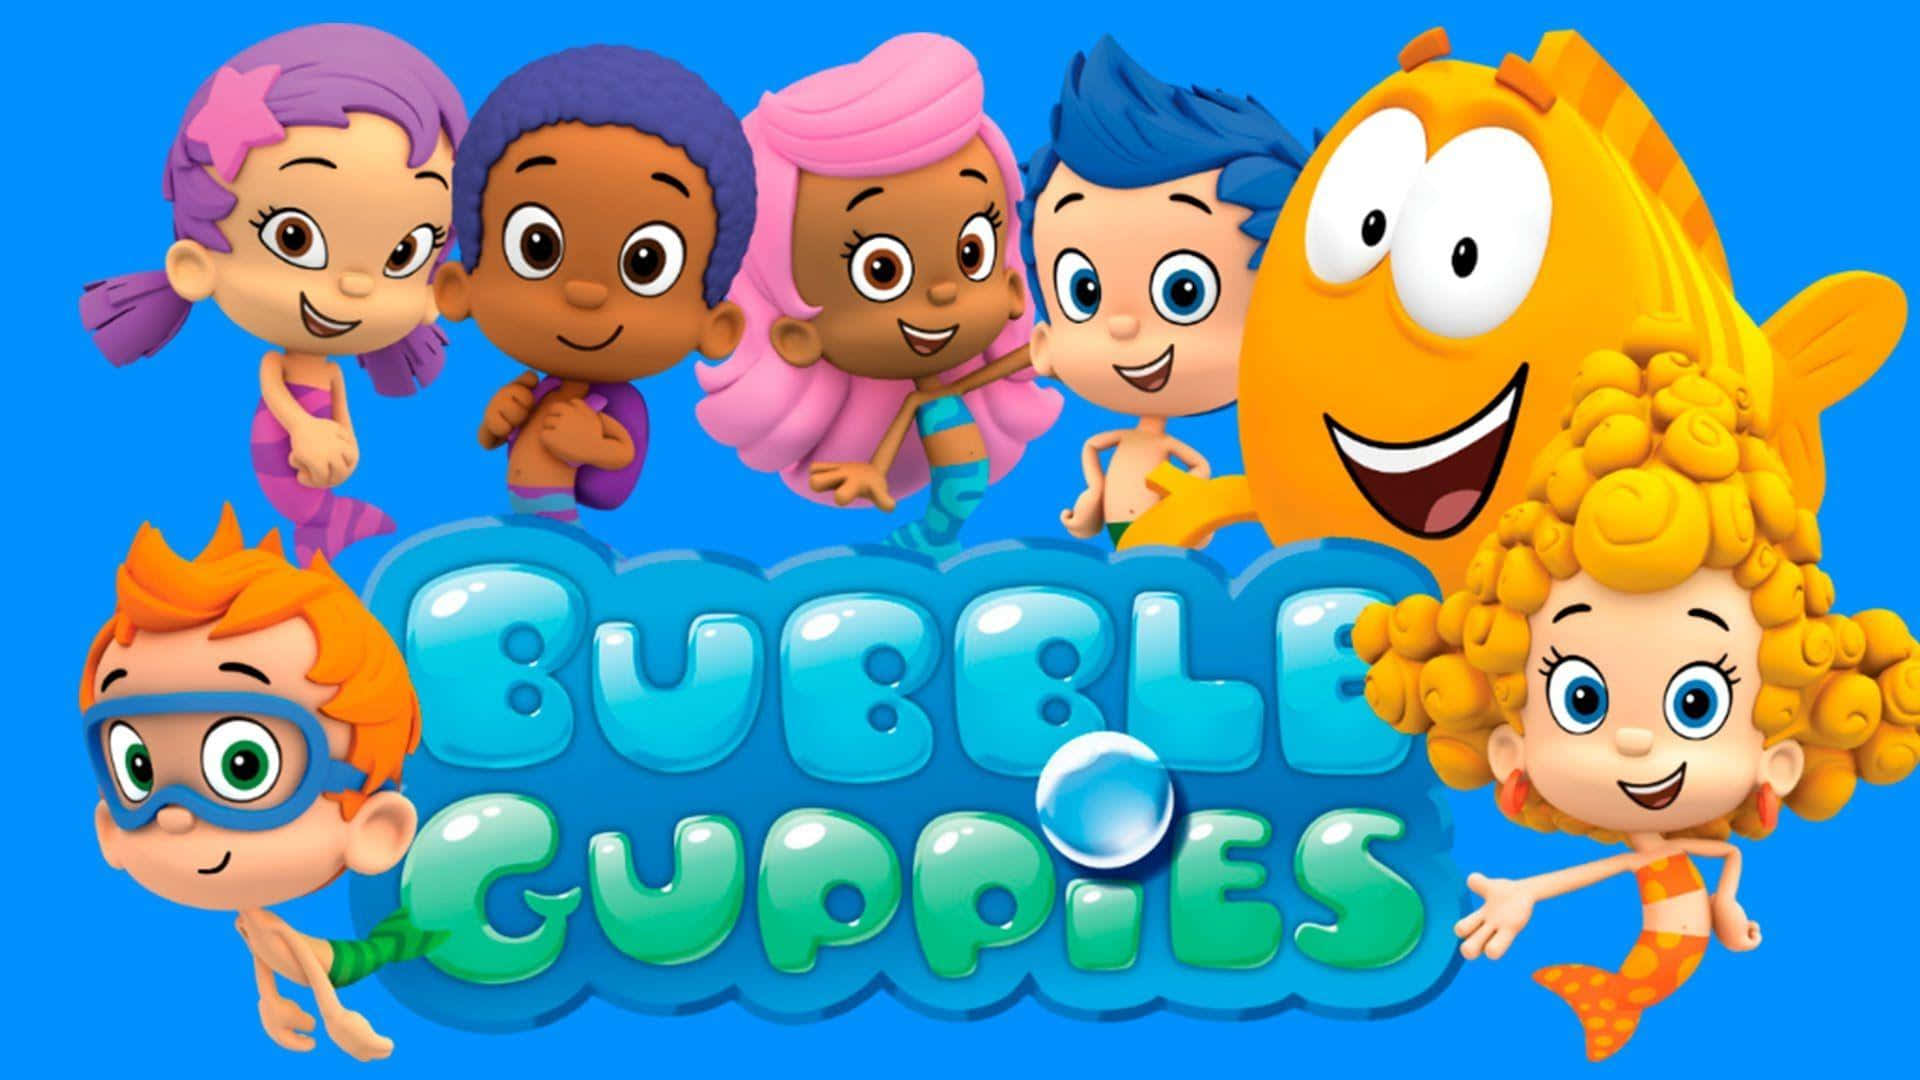 Fondos De Bubble Guppies